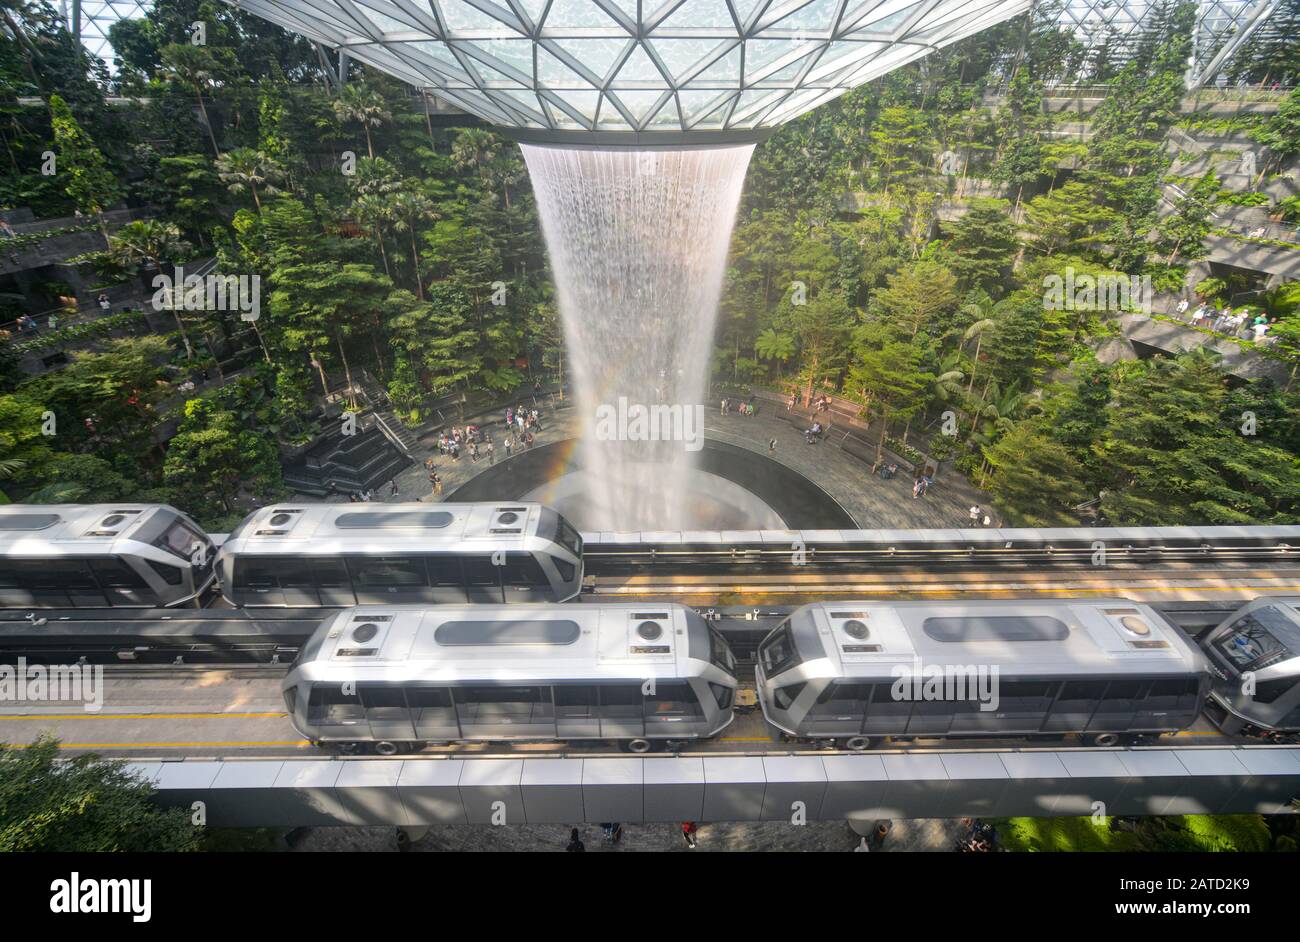 Singapur - 3. August 2019 - Skytrains, die am Singapur-Komplex Jewel Changi Airport und am Wasserfall Rain Vortex vorbeifahren Stockfoto